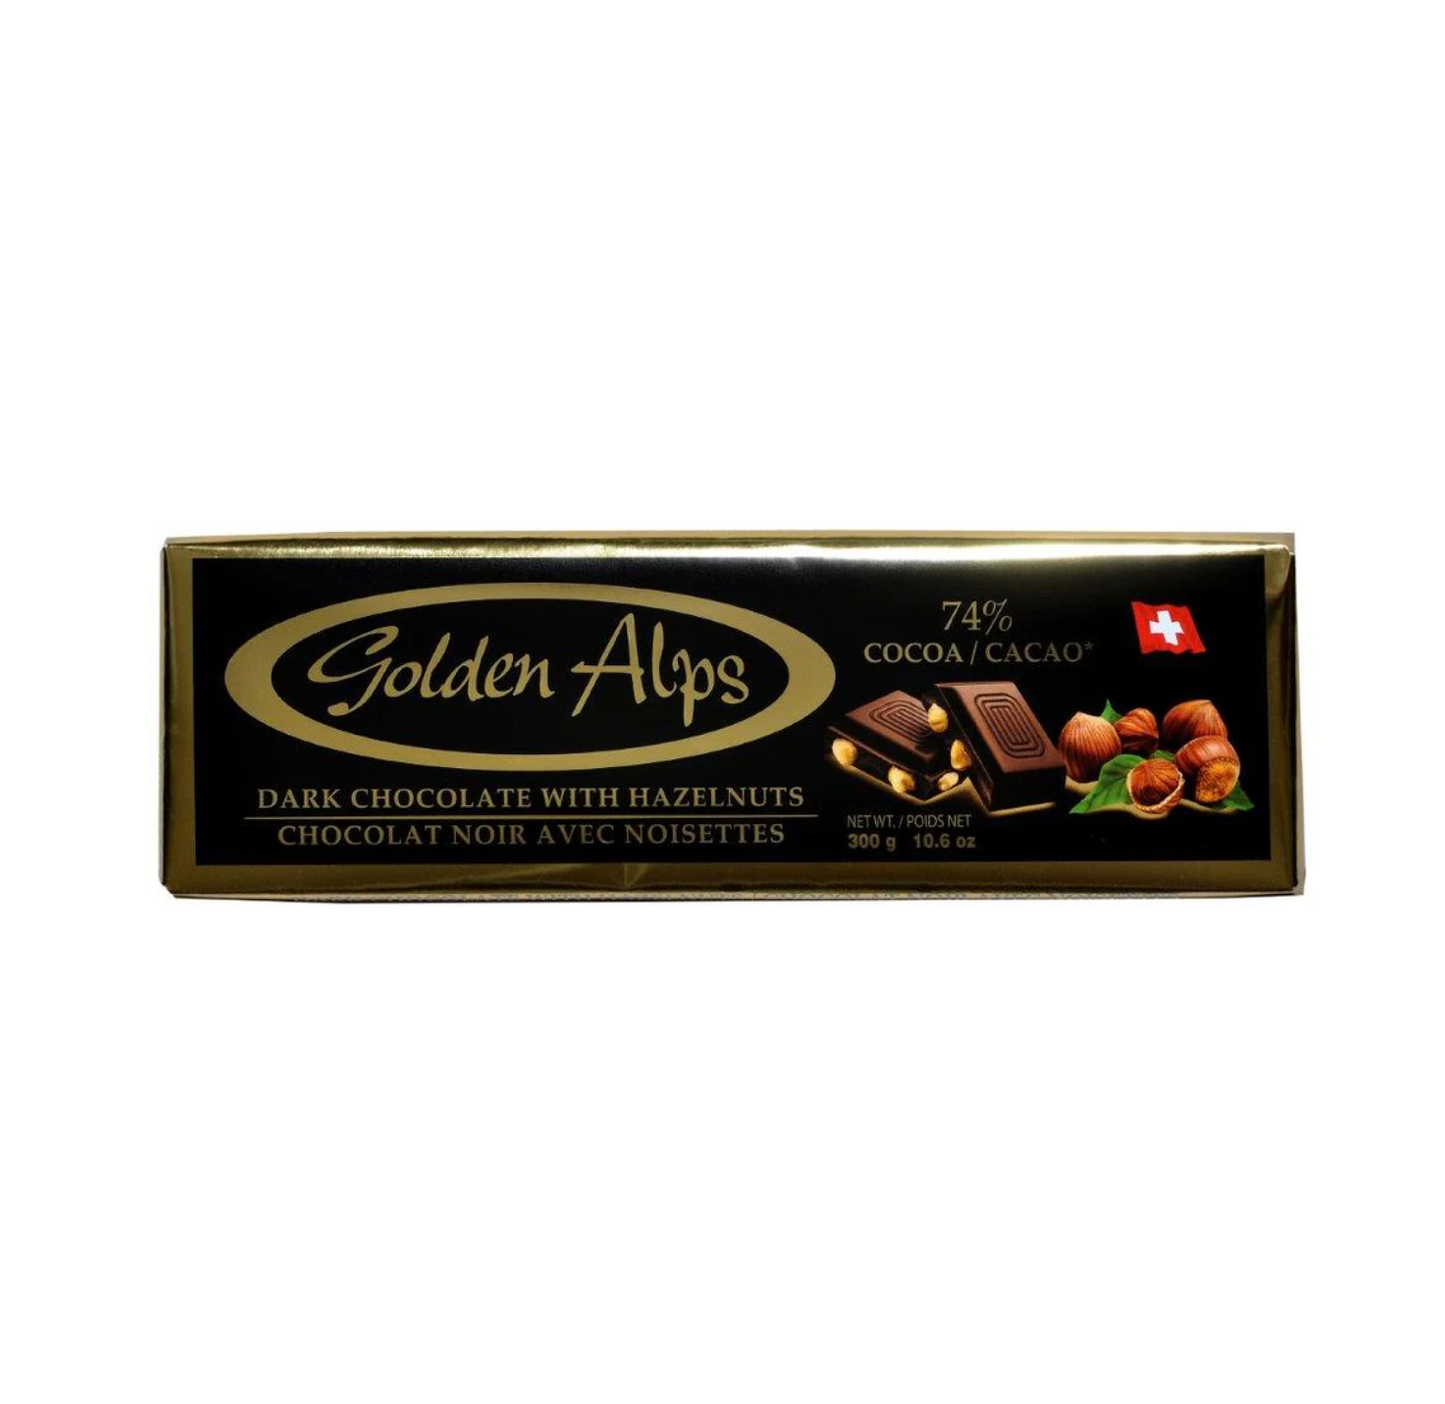 Golden Alps Dark Chocolate with Hazelnuts 300g